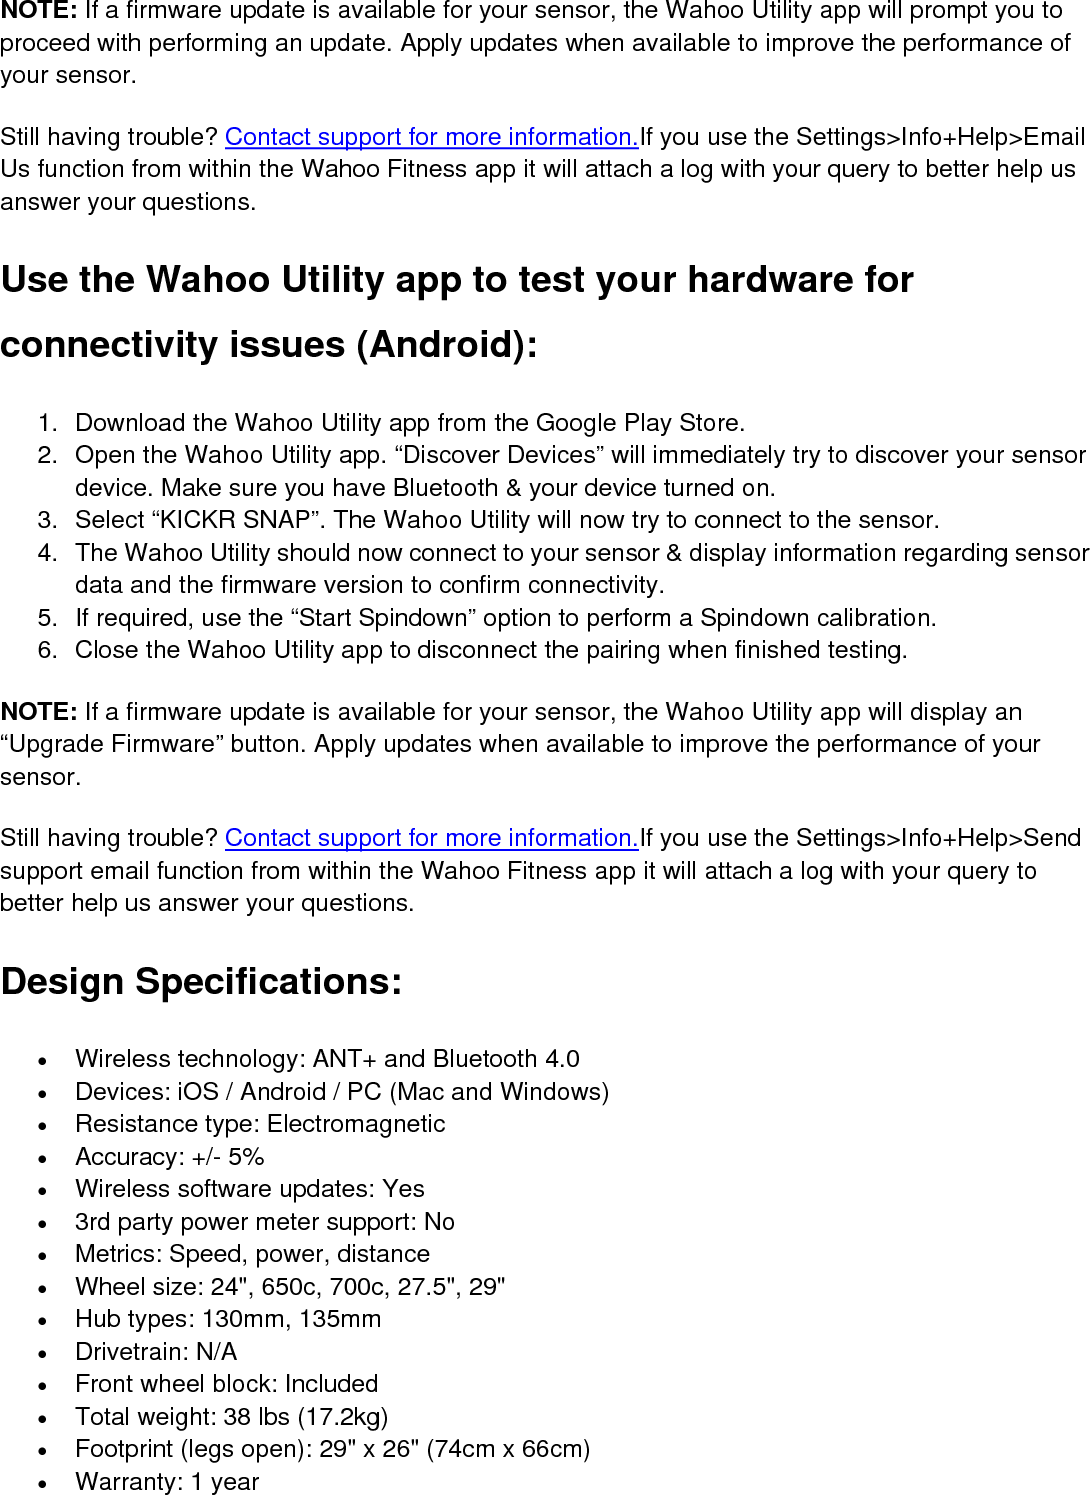 wahoo kickr snap manual pdf